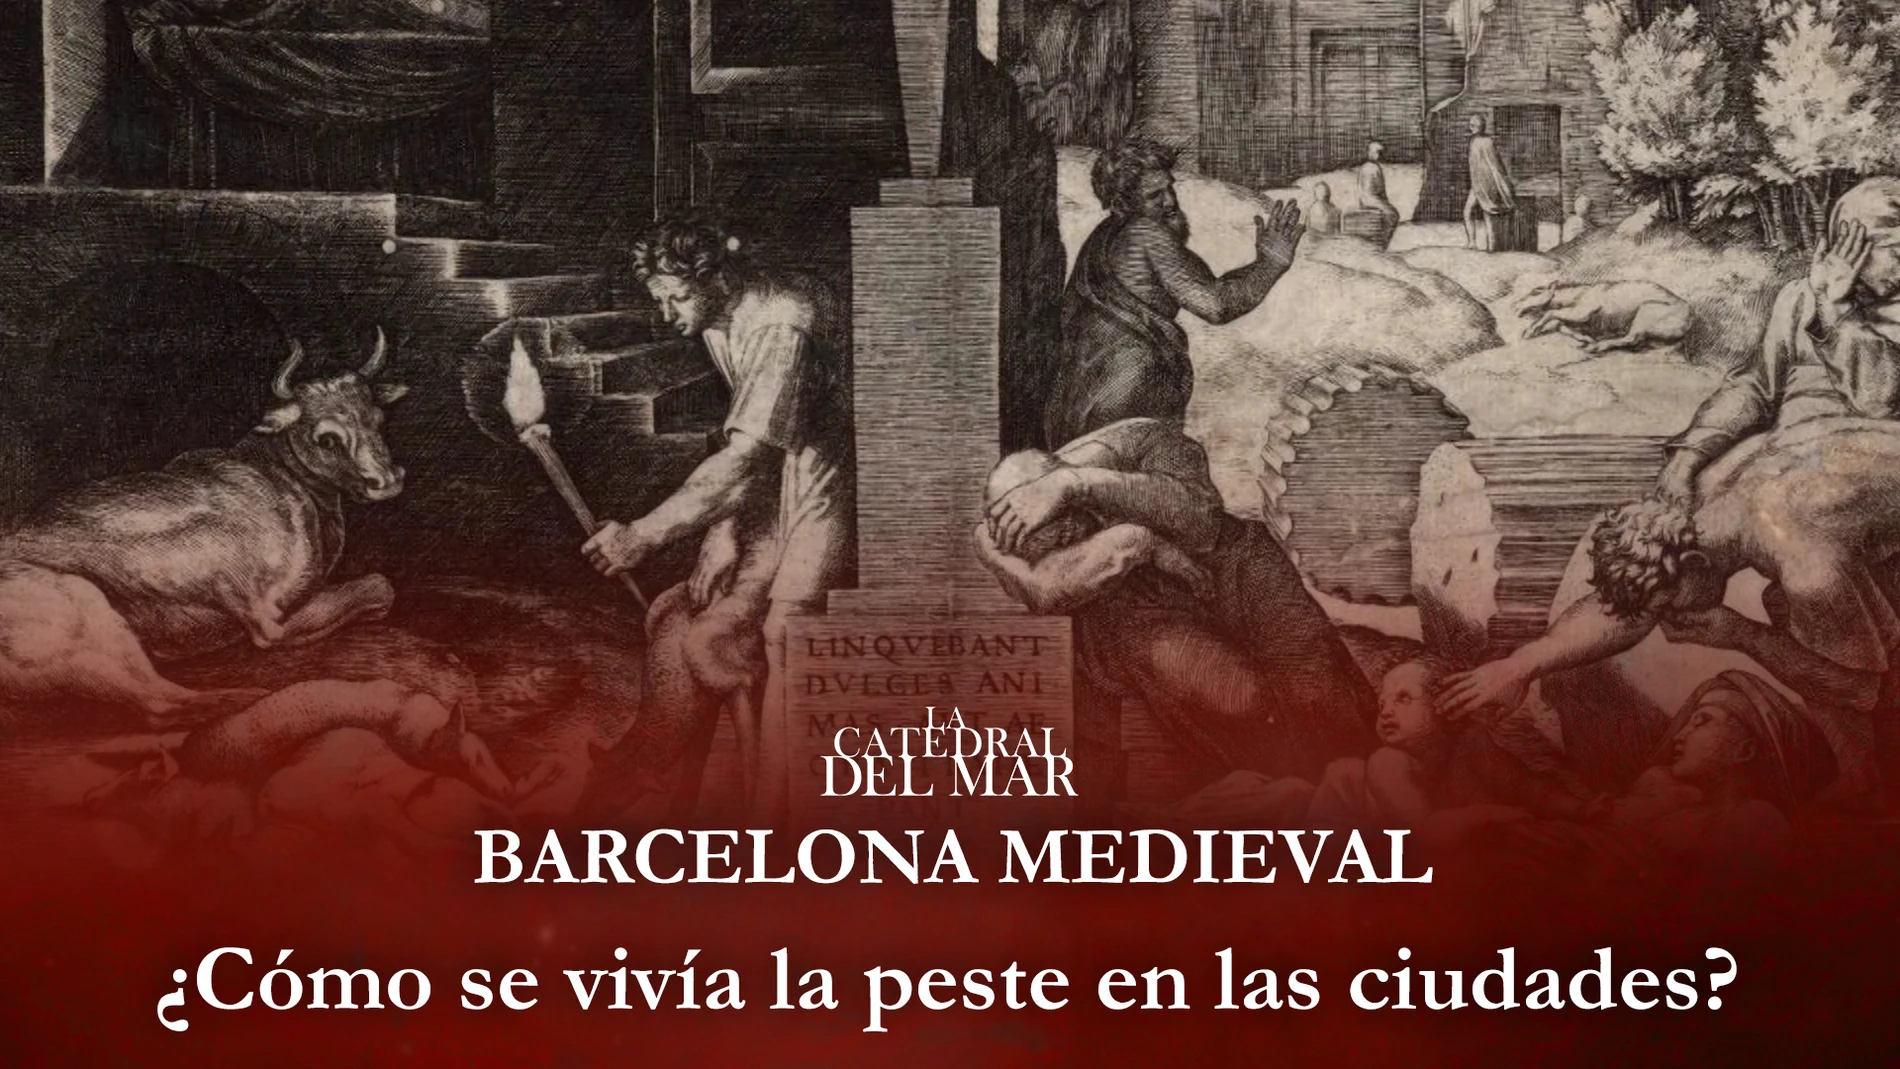 La peste, una enfermedad nueva en la época medieval